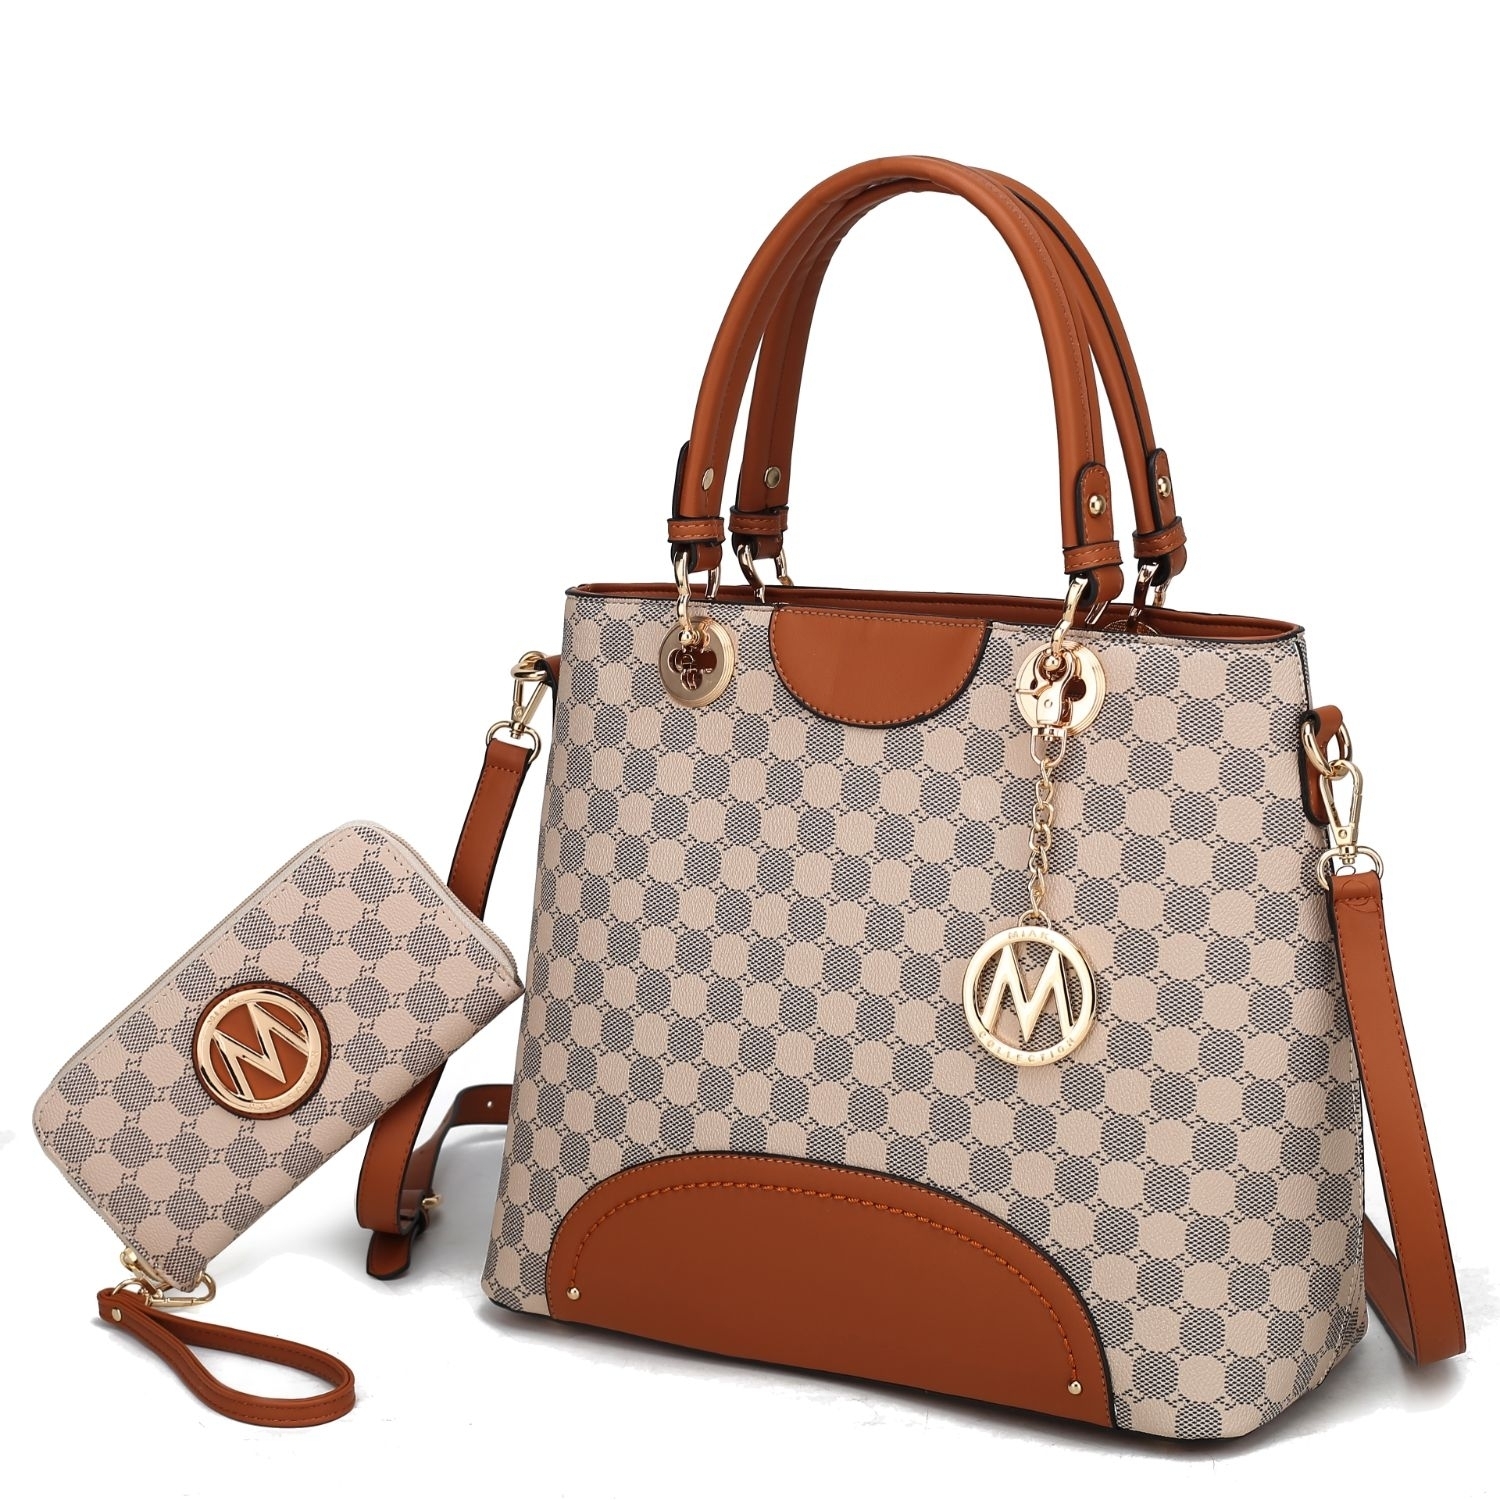 MKF Collection Gabriella Handbag With Wallet By Mia K. - Cognac Brown